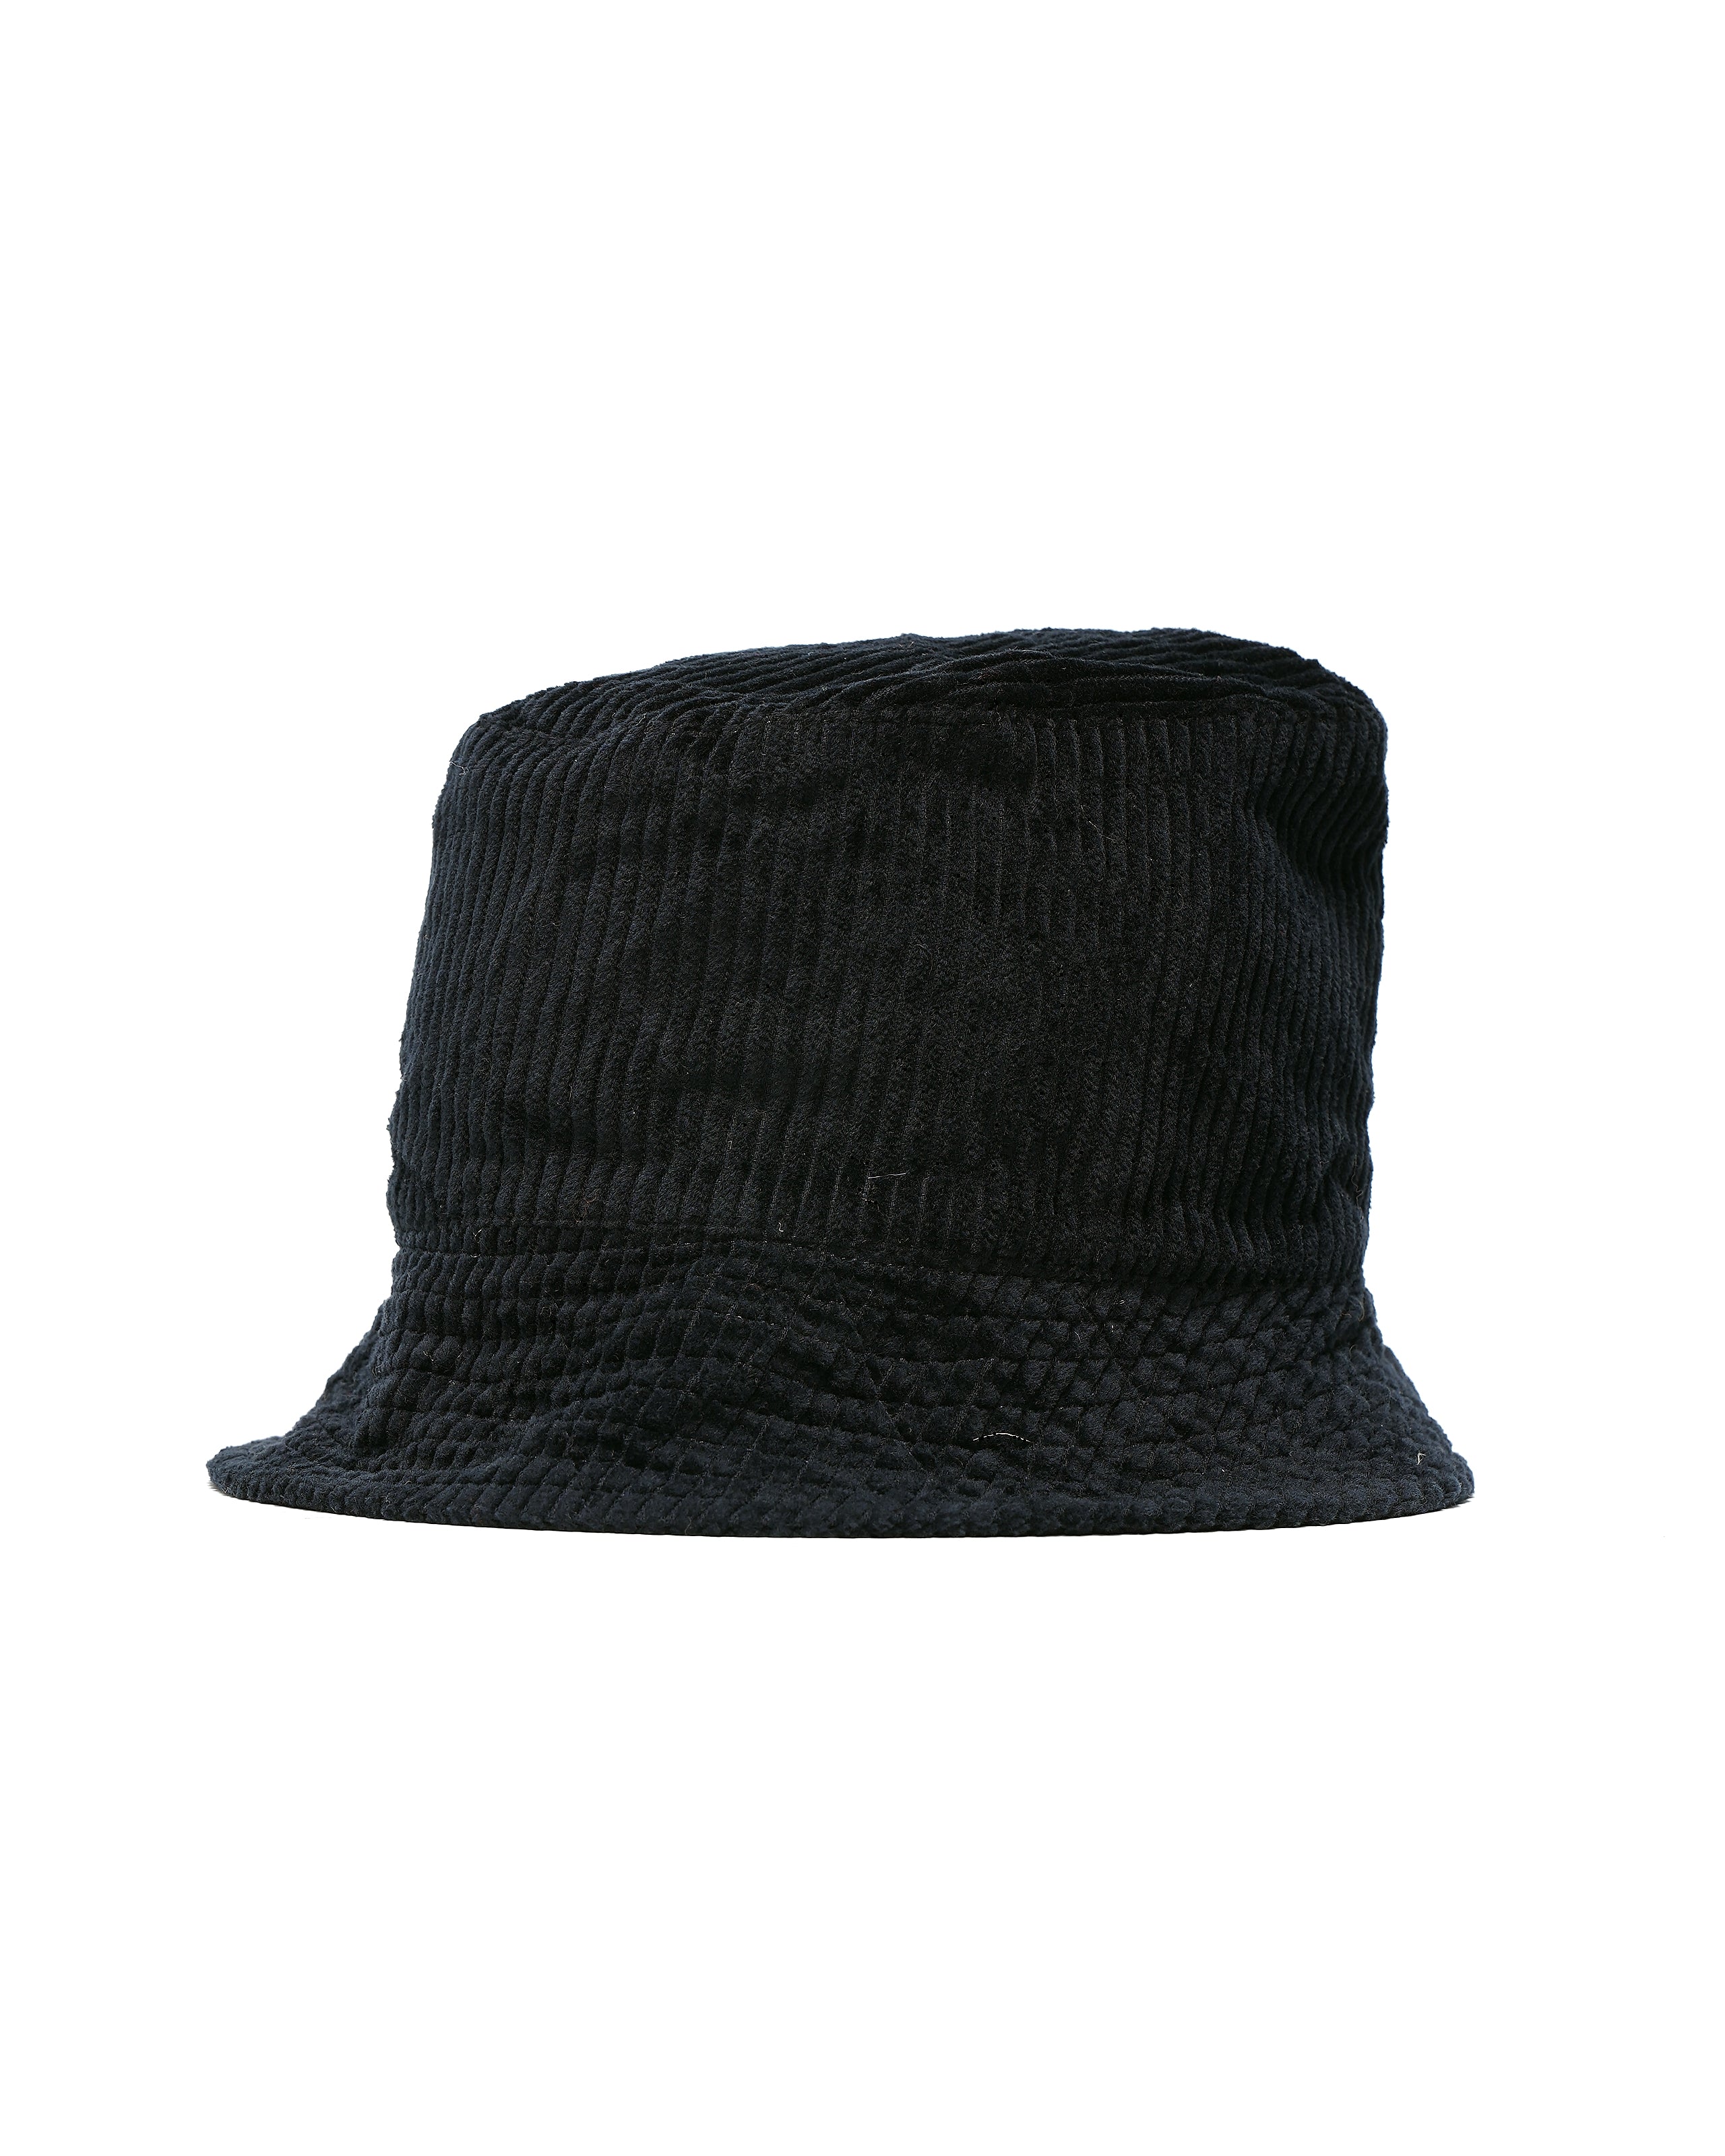 Bucket Hat - Dk. Navy Cotton 4.5W Corduroy